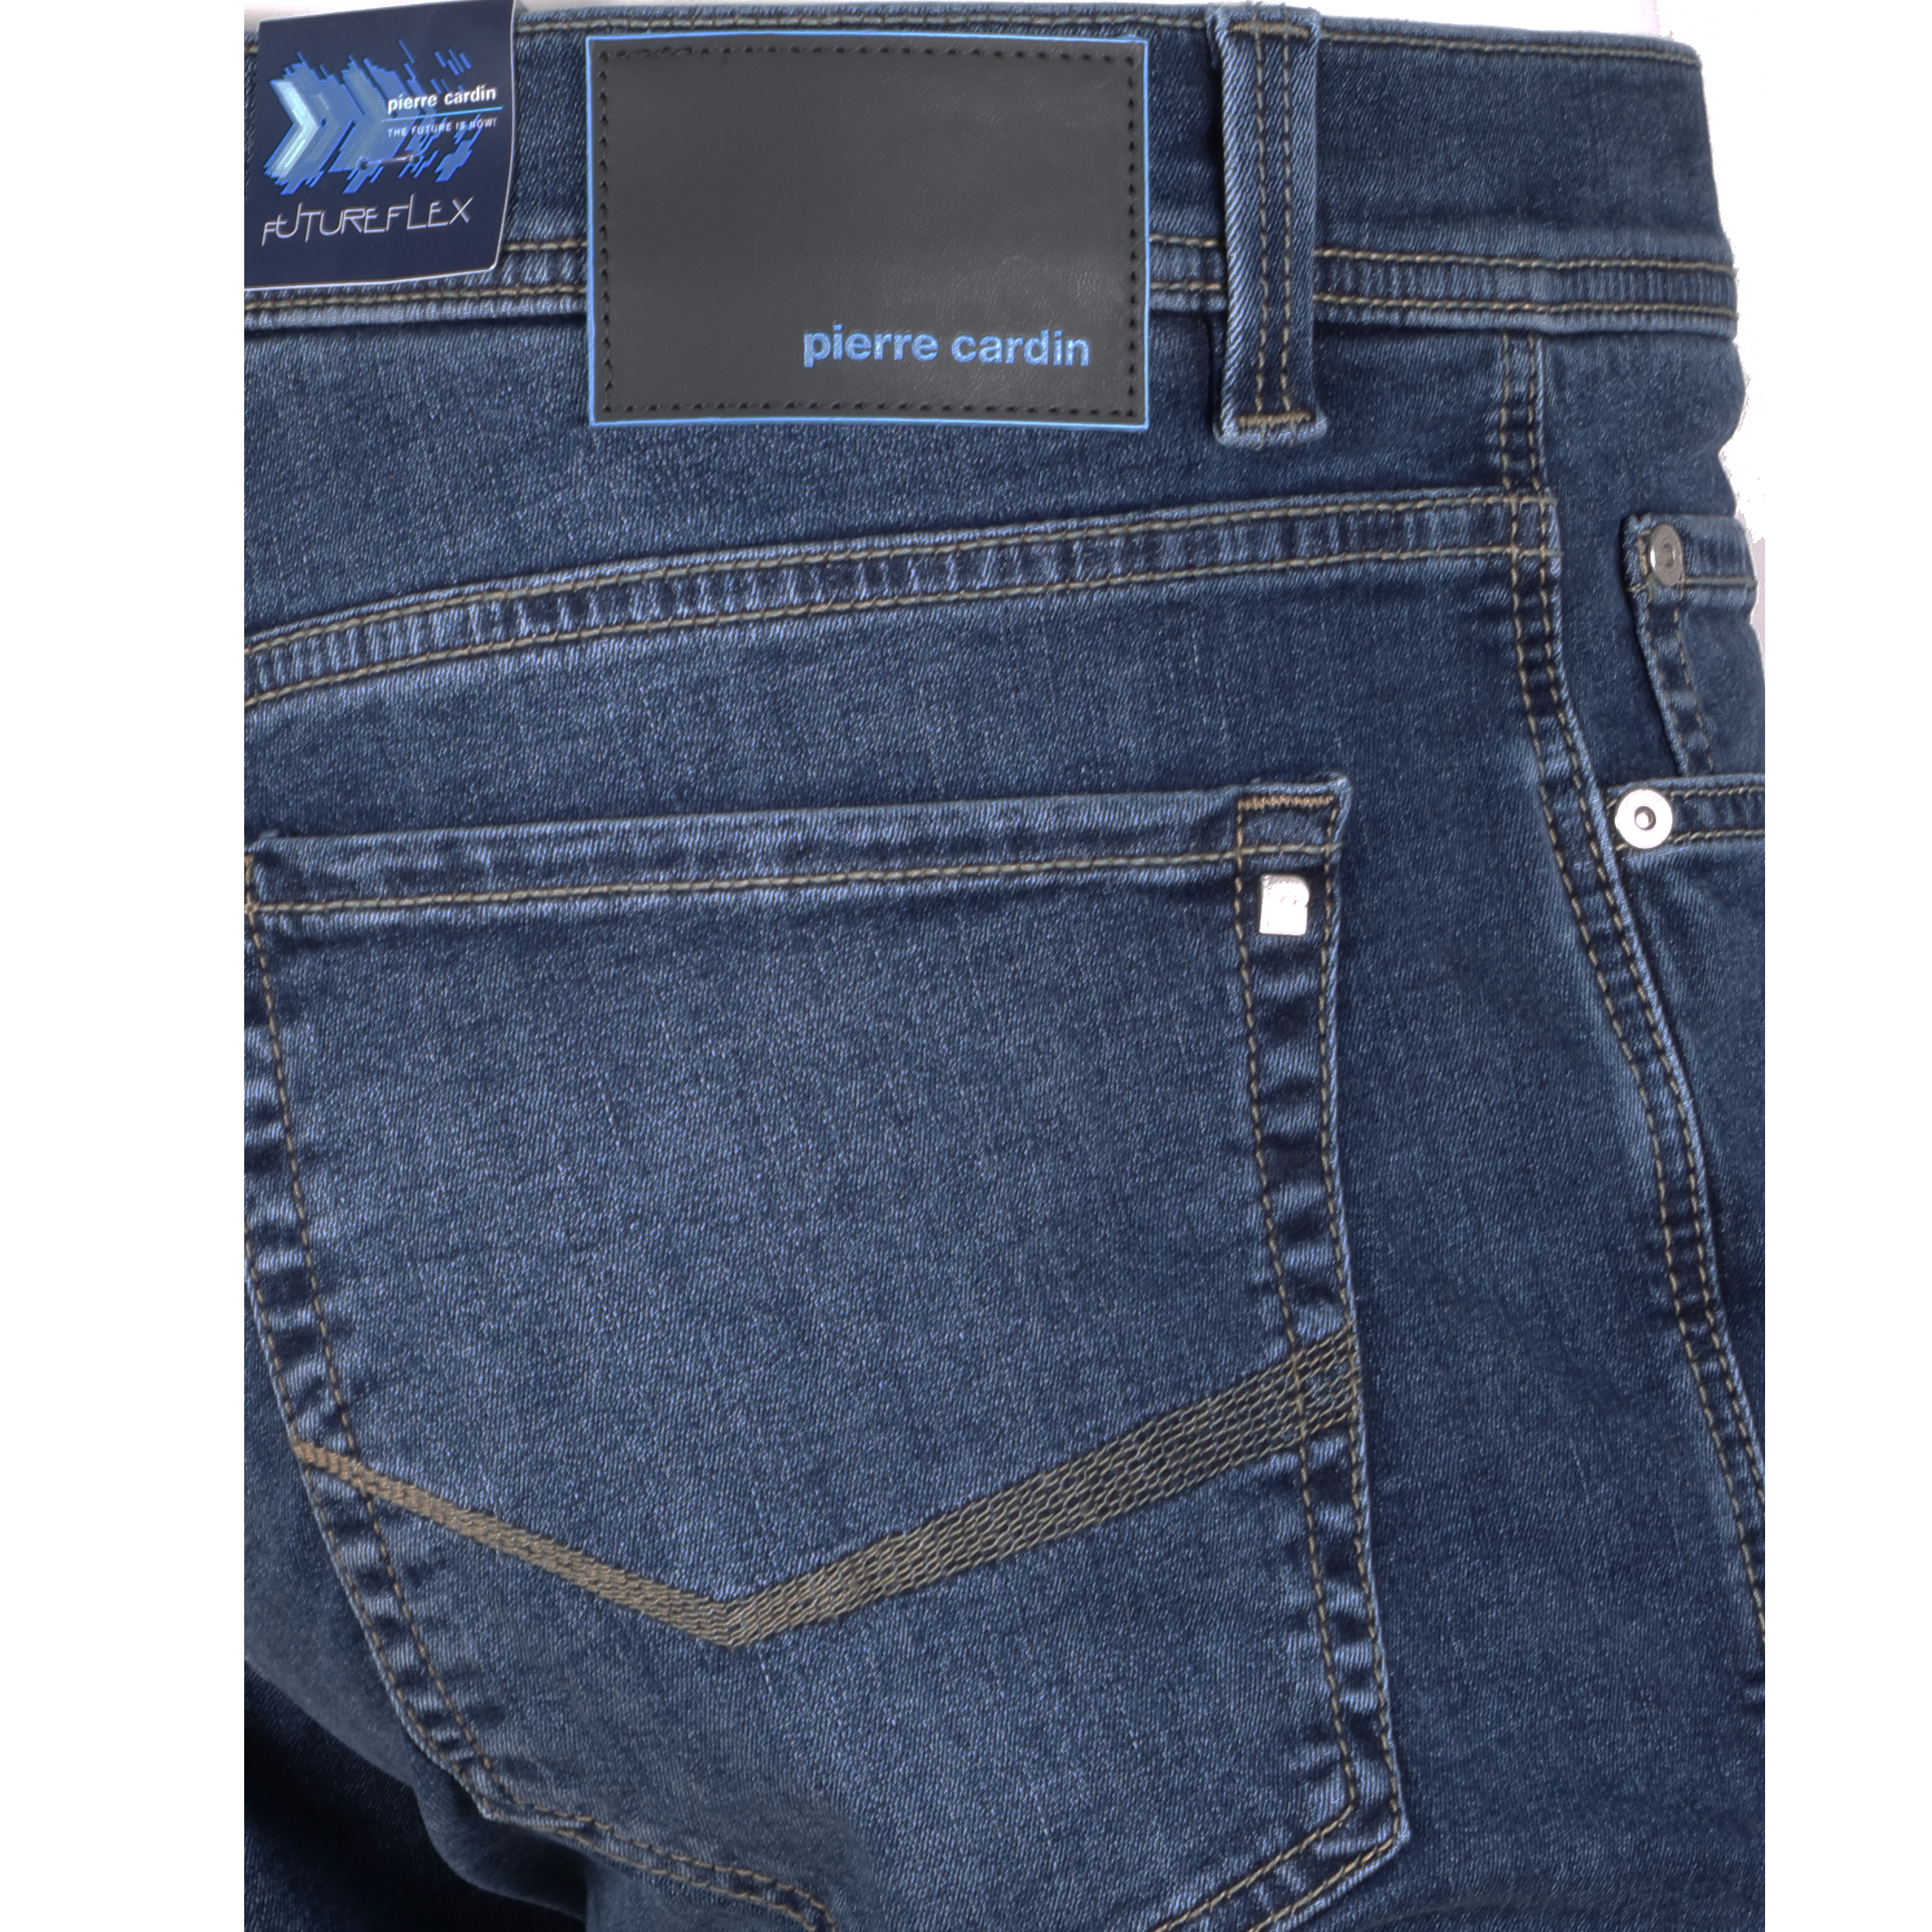 Pierre Cardin Herren Jeans Lyon Futureflex - blau used 31/34